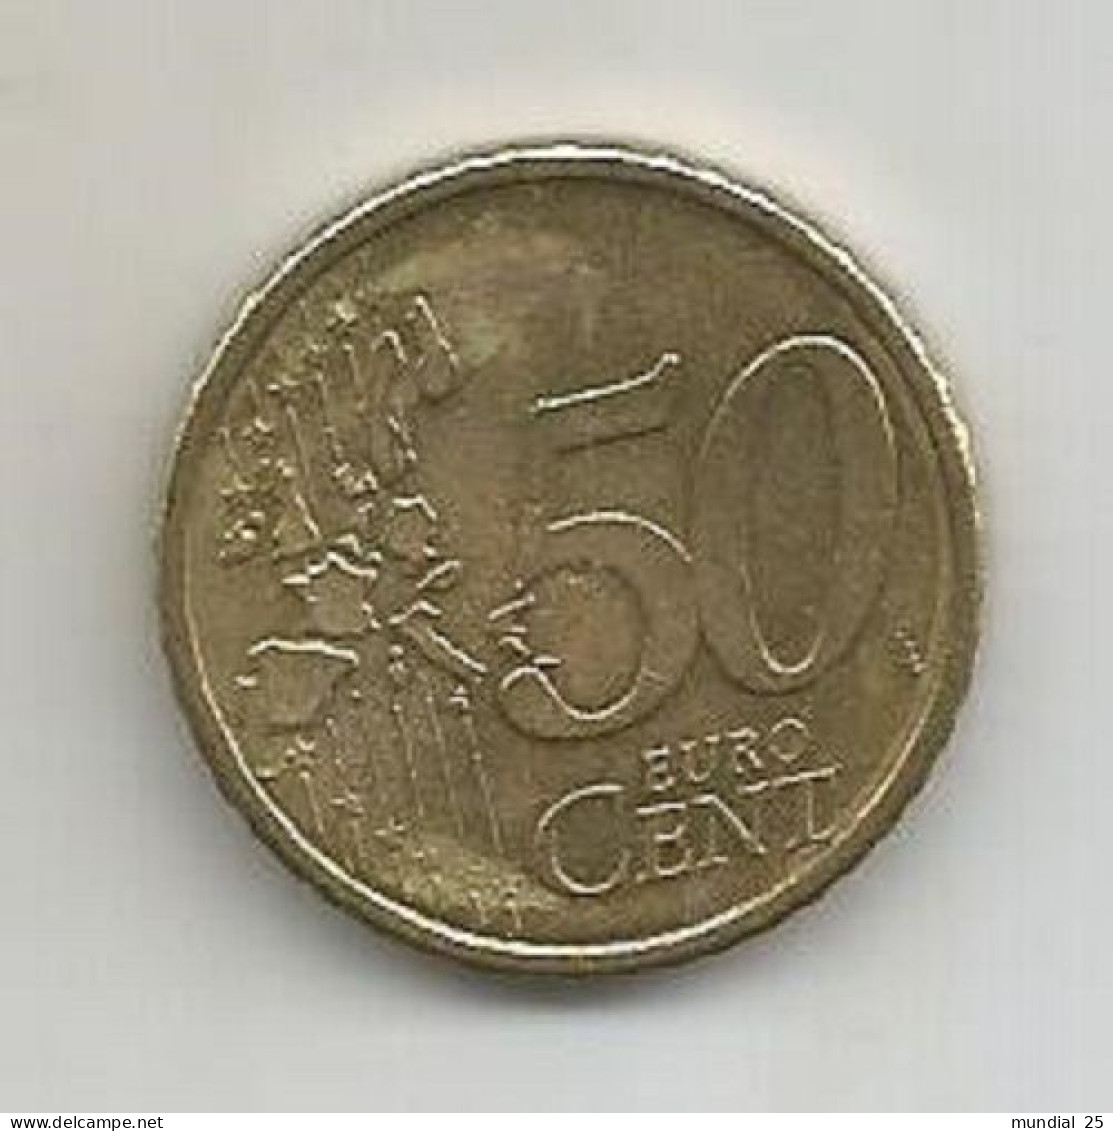 FINLAND 50 EURO CENT 2000 M - Finland